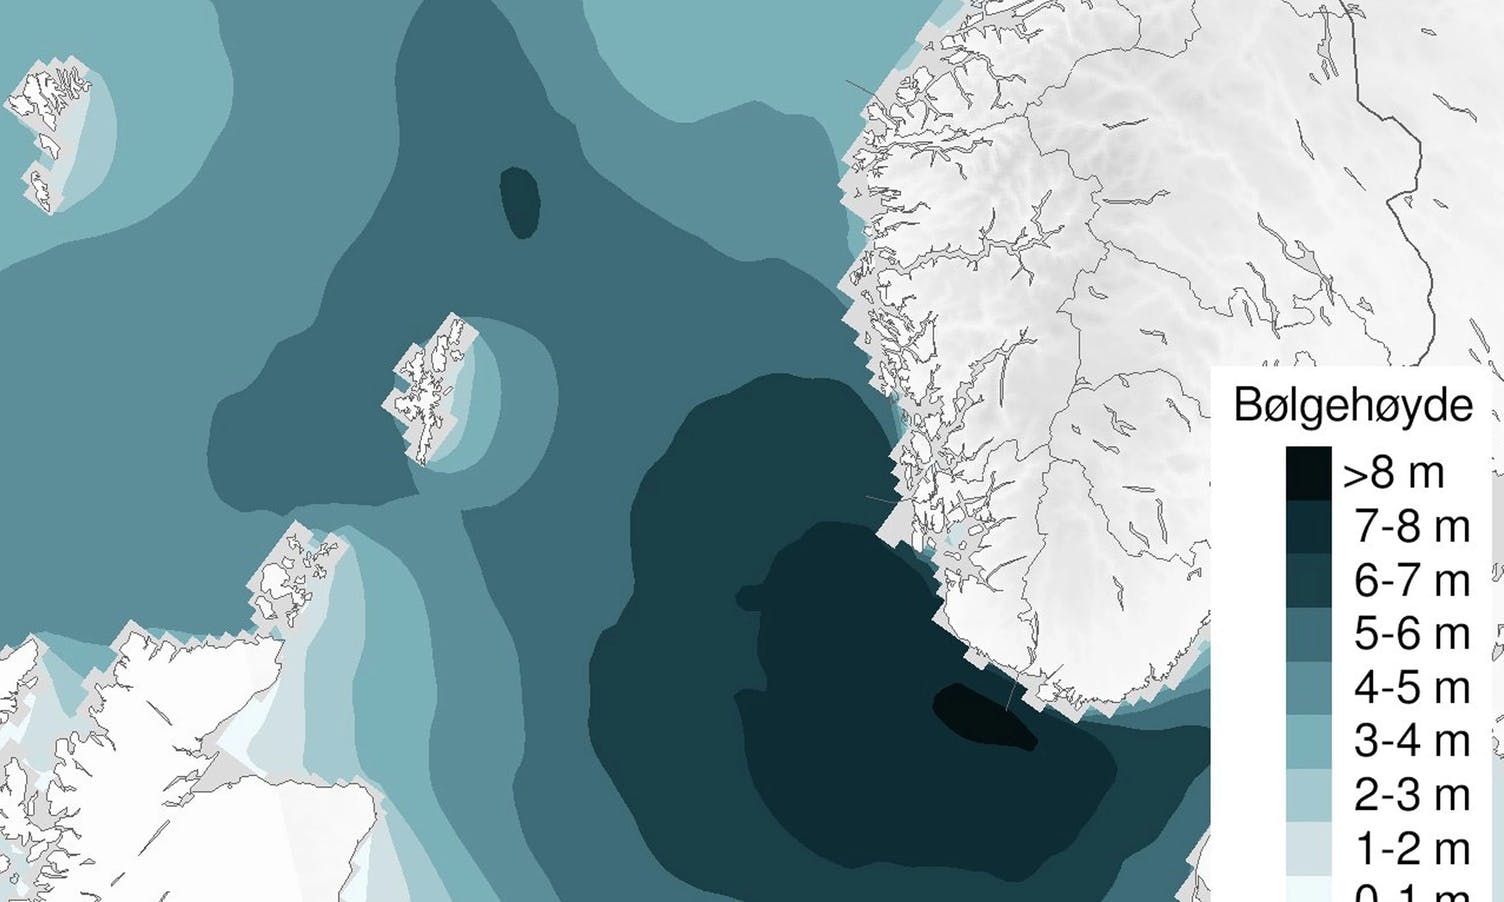 Melder 5-6 meter høge bølger utanfor Bjørnafjorden